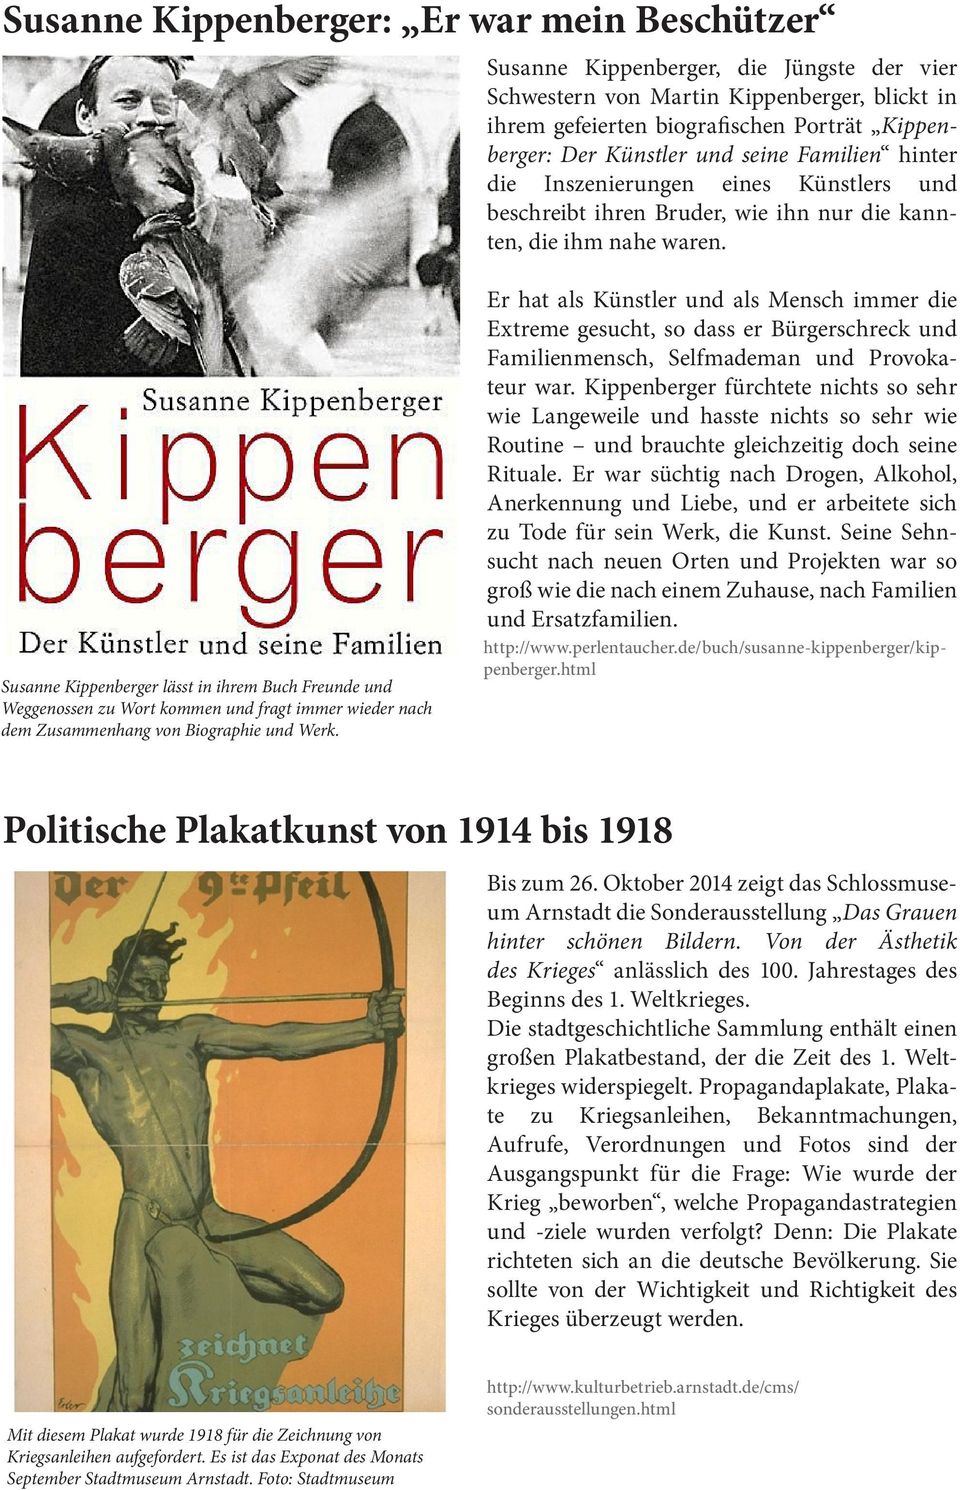 Susanne Kippenberger lässt in ihrem Buch Freunde und Weggenossen zu Wort kommen und fragt immer wieder nach dem Zusammenhang von Biographie und Werk.